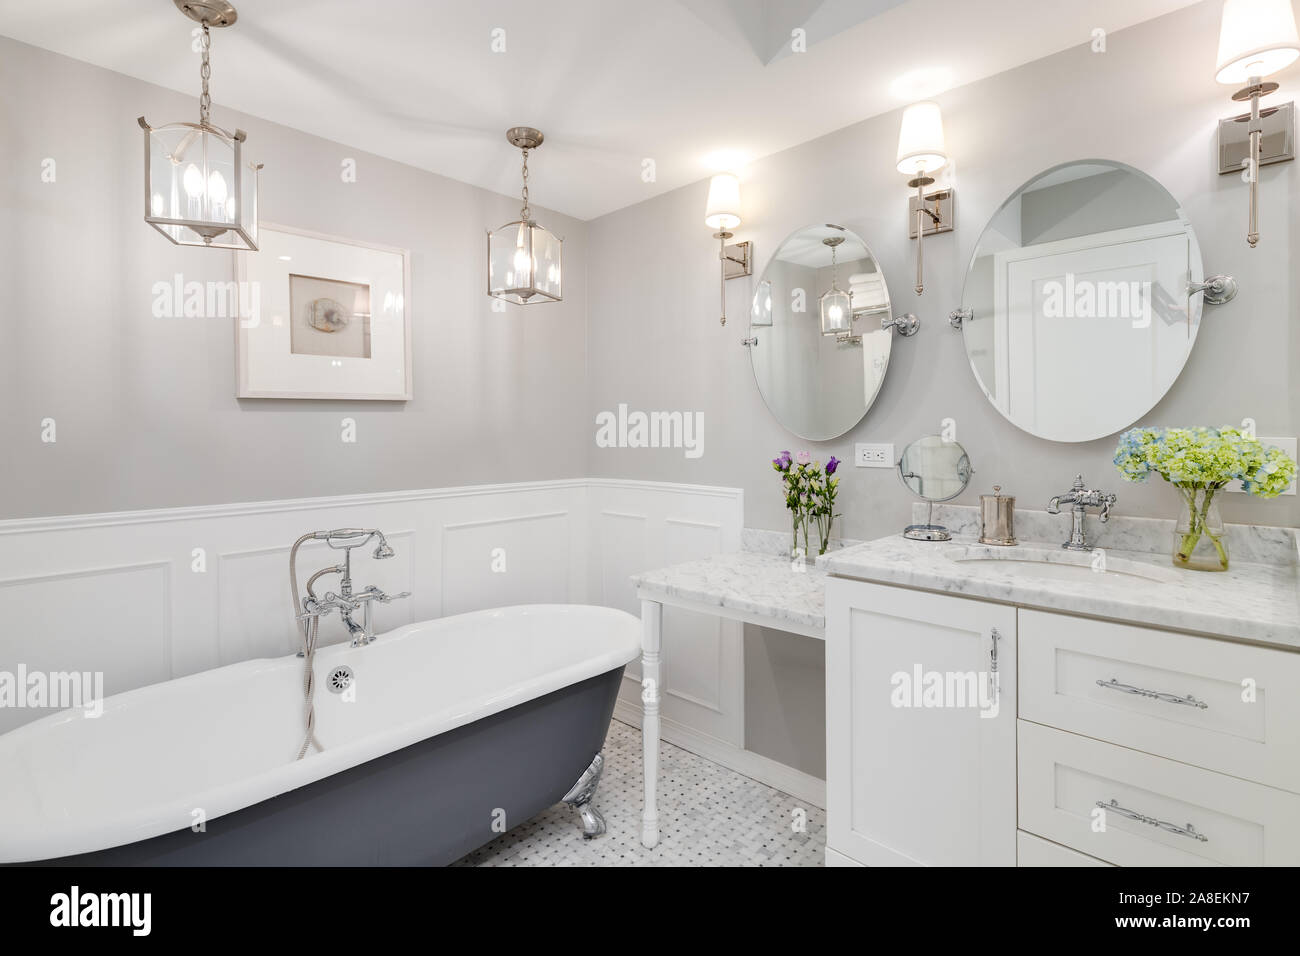 Eine schöne, weiße Badezimmer mit einem Stand alone clawfoot Badewanne mit Chrom Hardware. Blumen auf dem weißen Marmor Zähler nach oben. Stockfoto